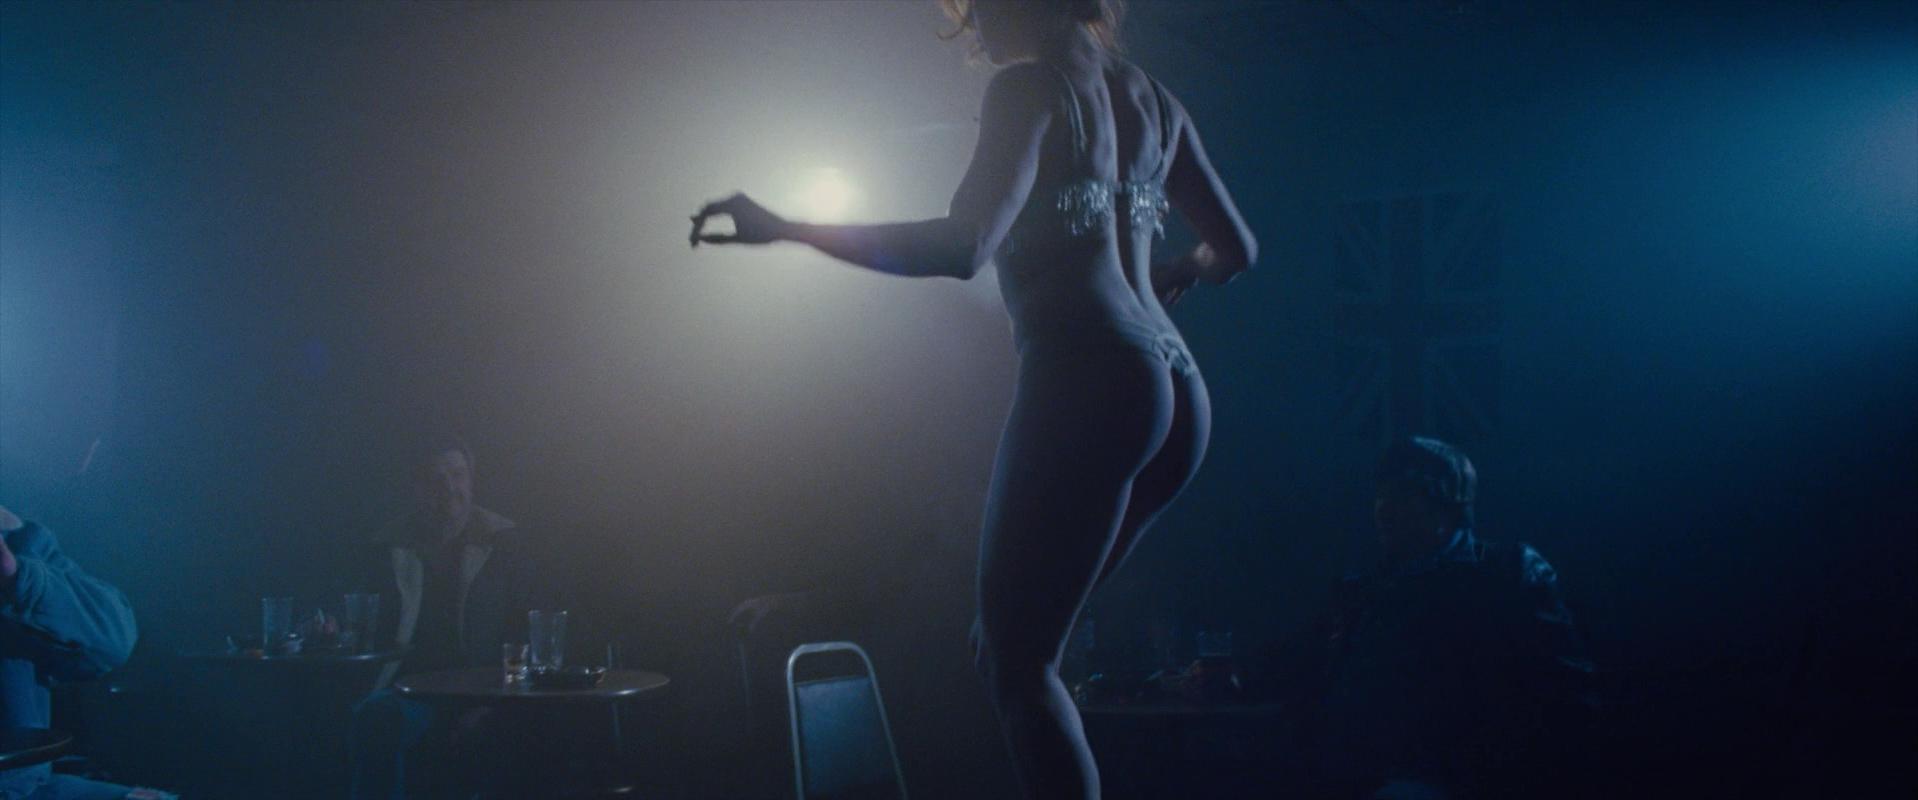 Nude Video Celebs Amy Adams Nude American Hustle 2013 